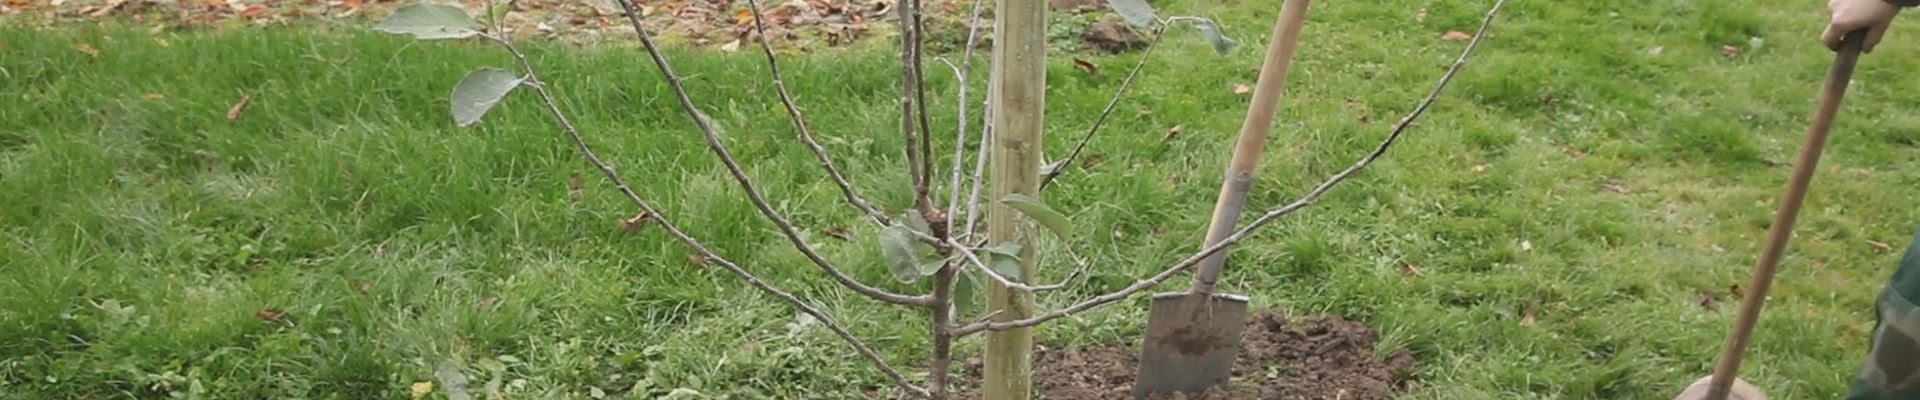 Apfelbaum - Einpflanzen im Garten (thumbnail).jpg